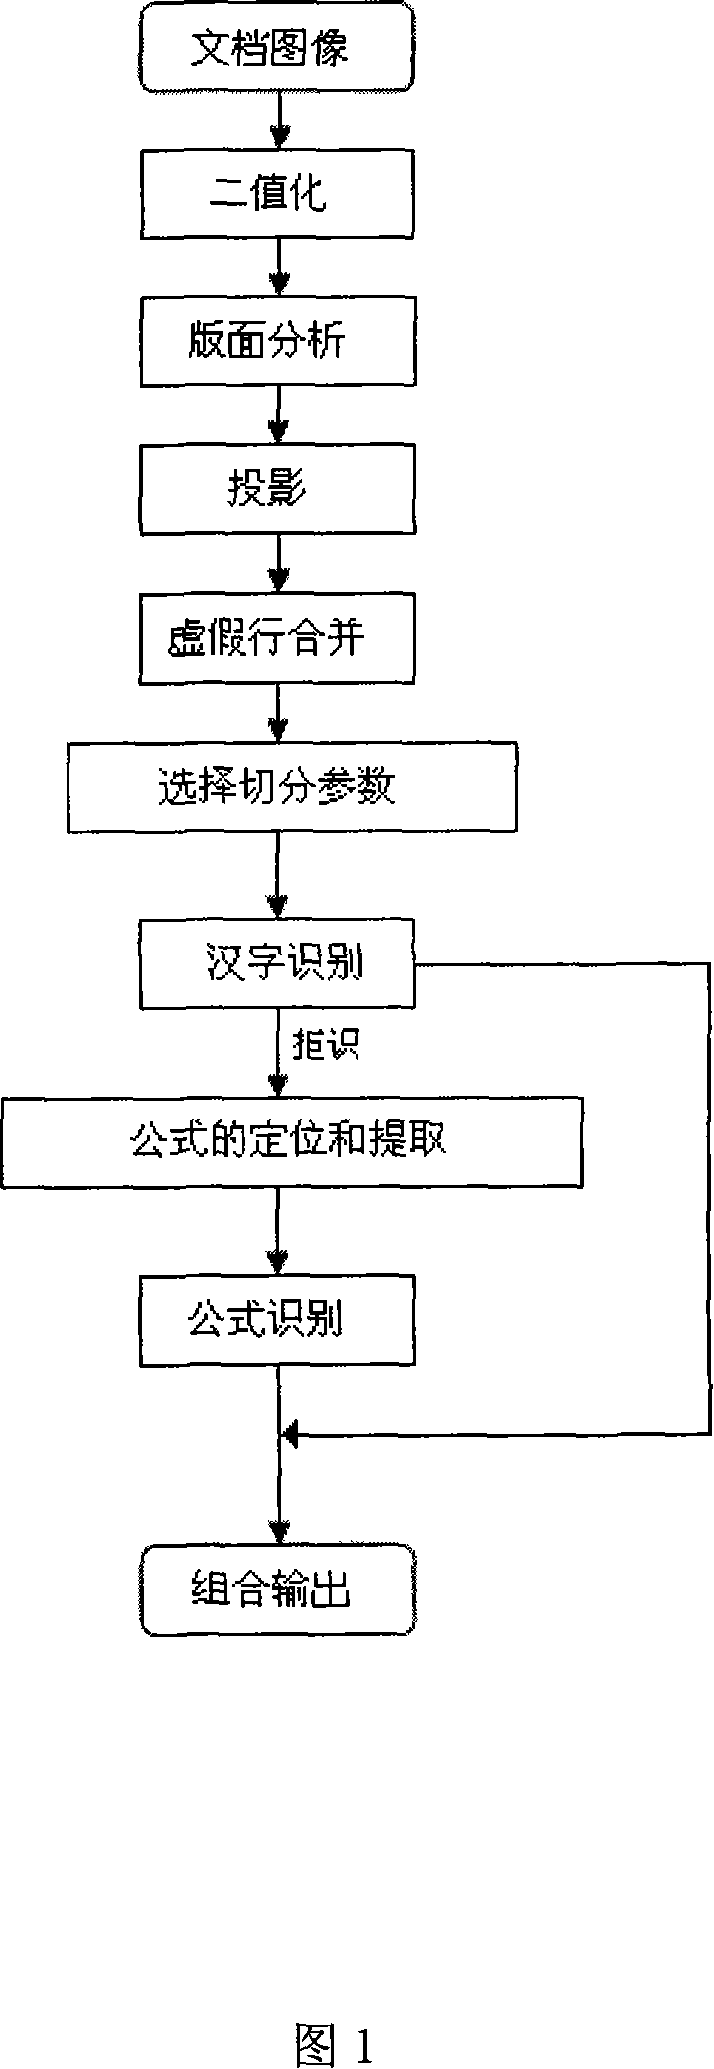 Chinese printing style formula identification method